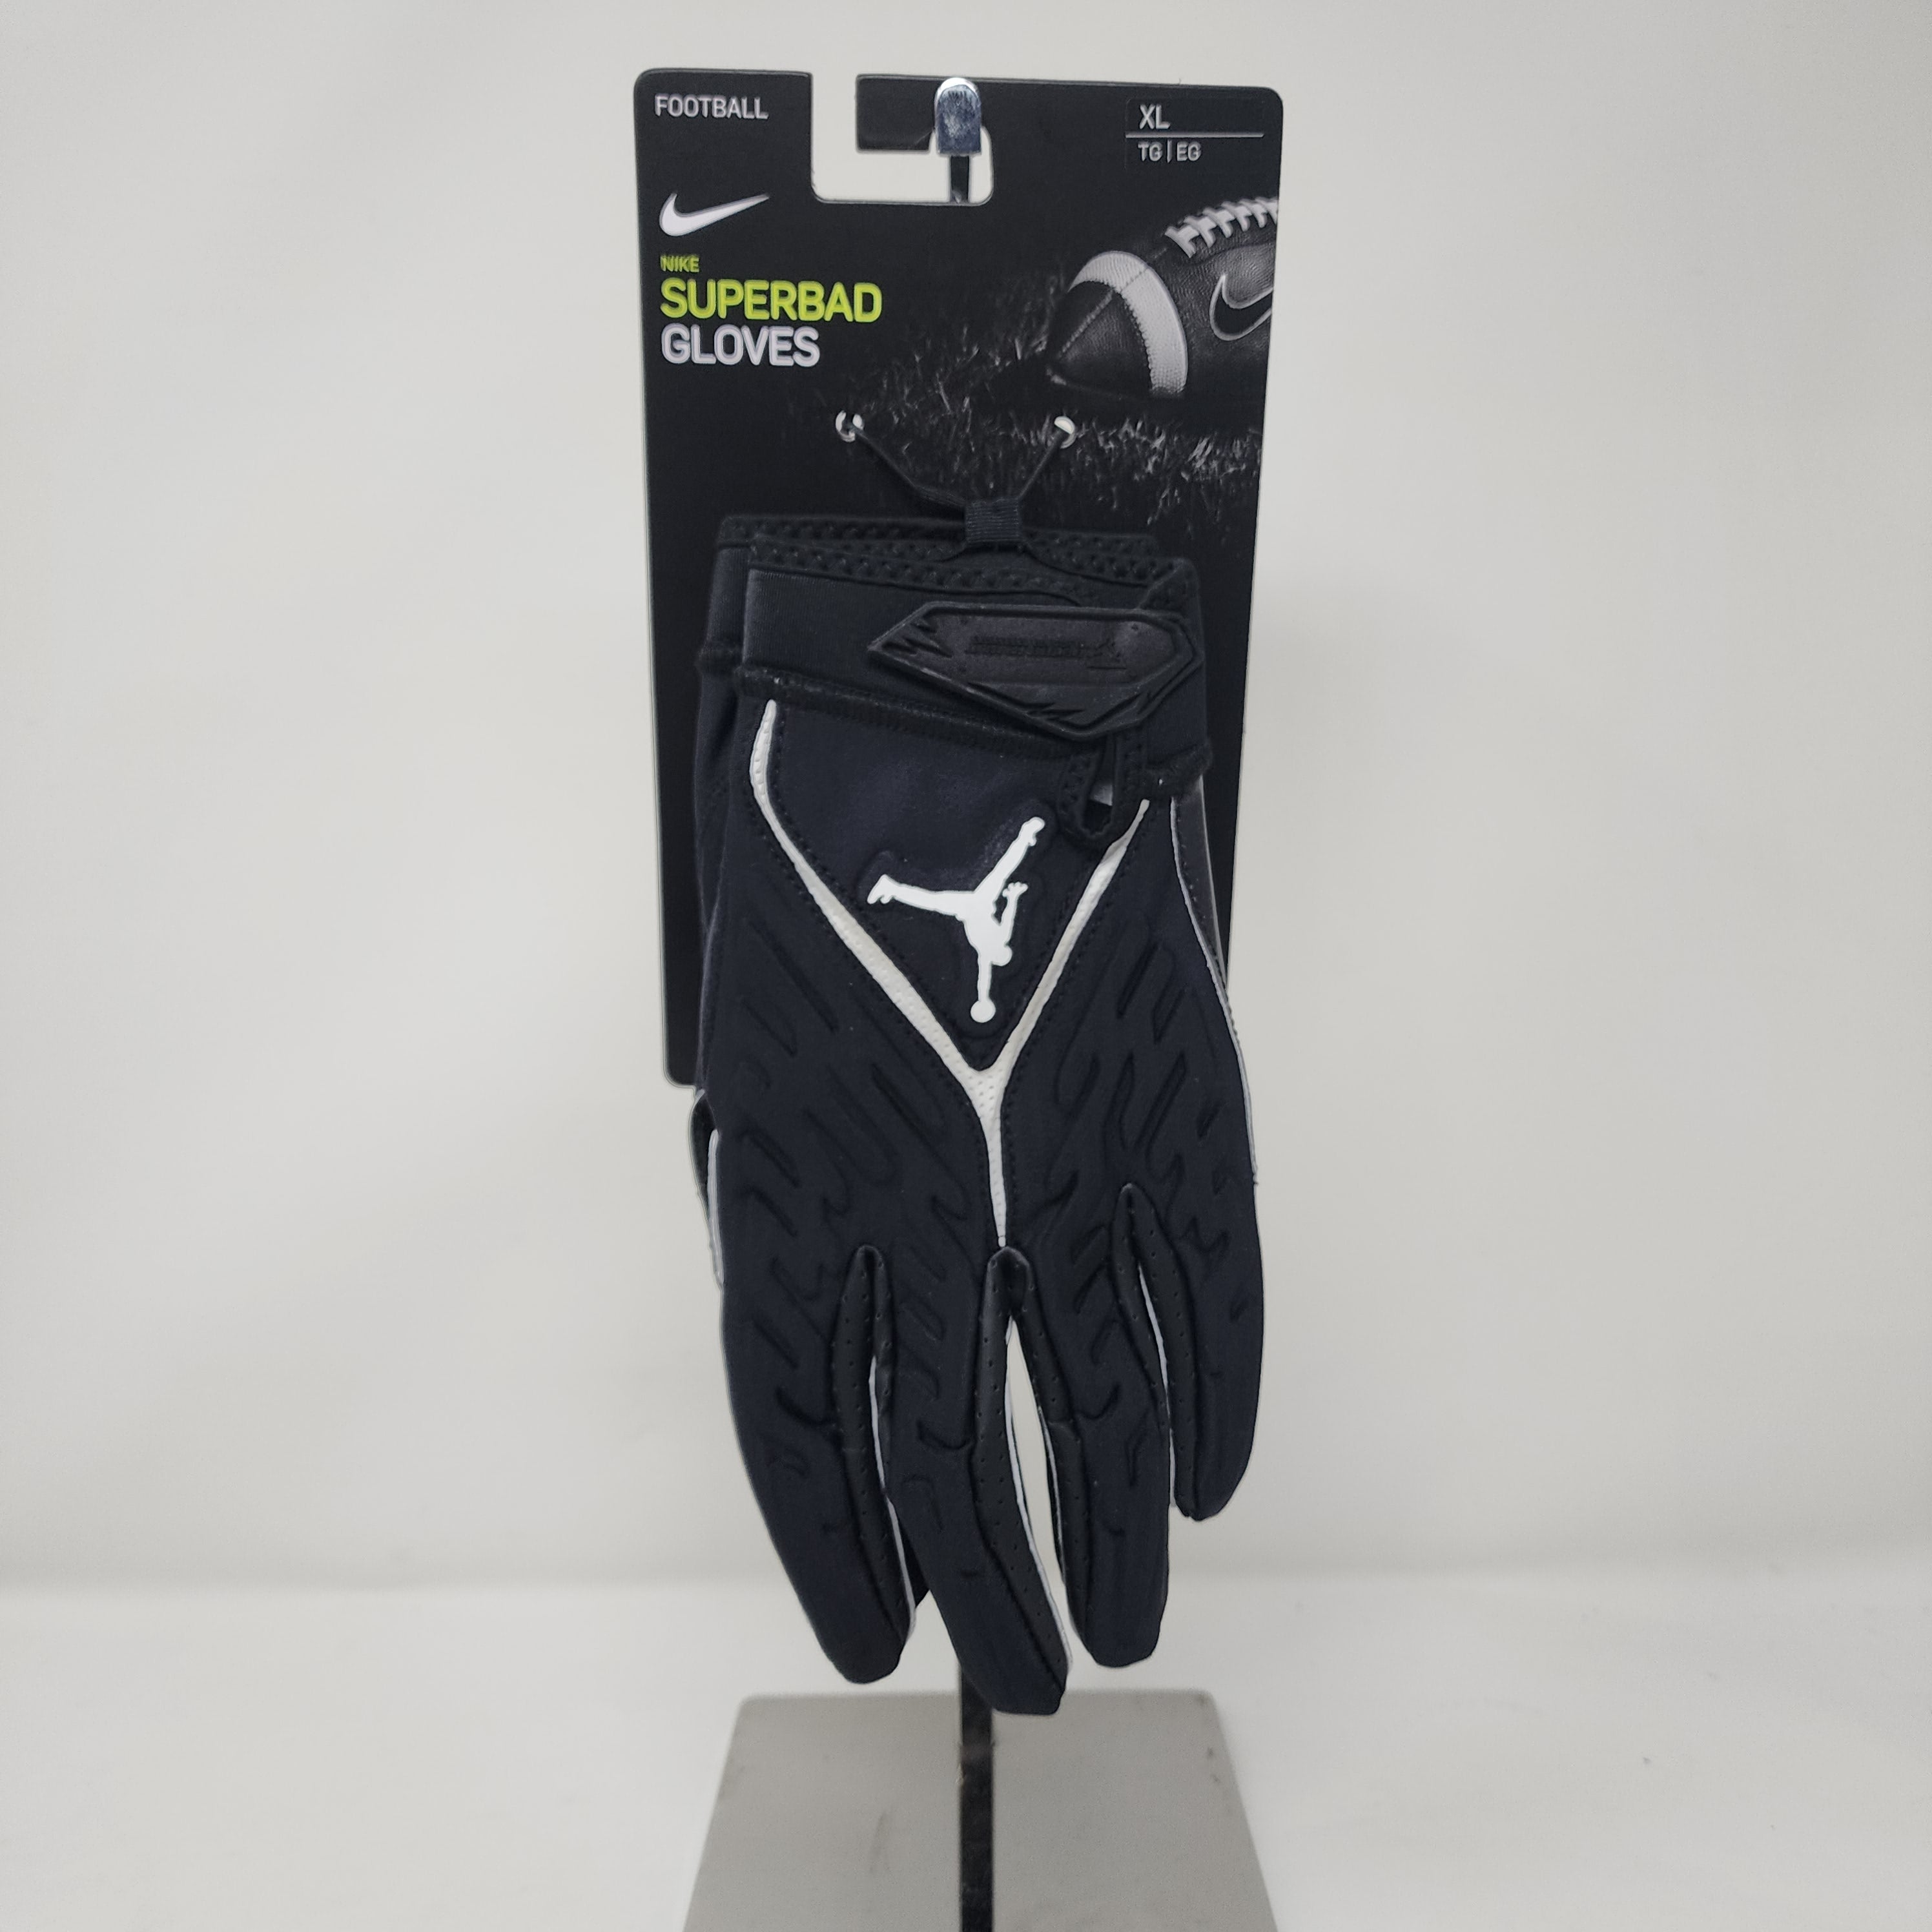 Nike Jordan Football Gloves Mens XL Black Superbad Lightweight 